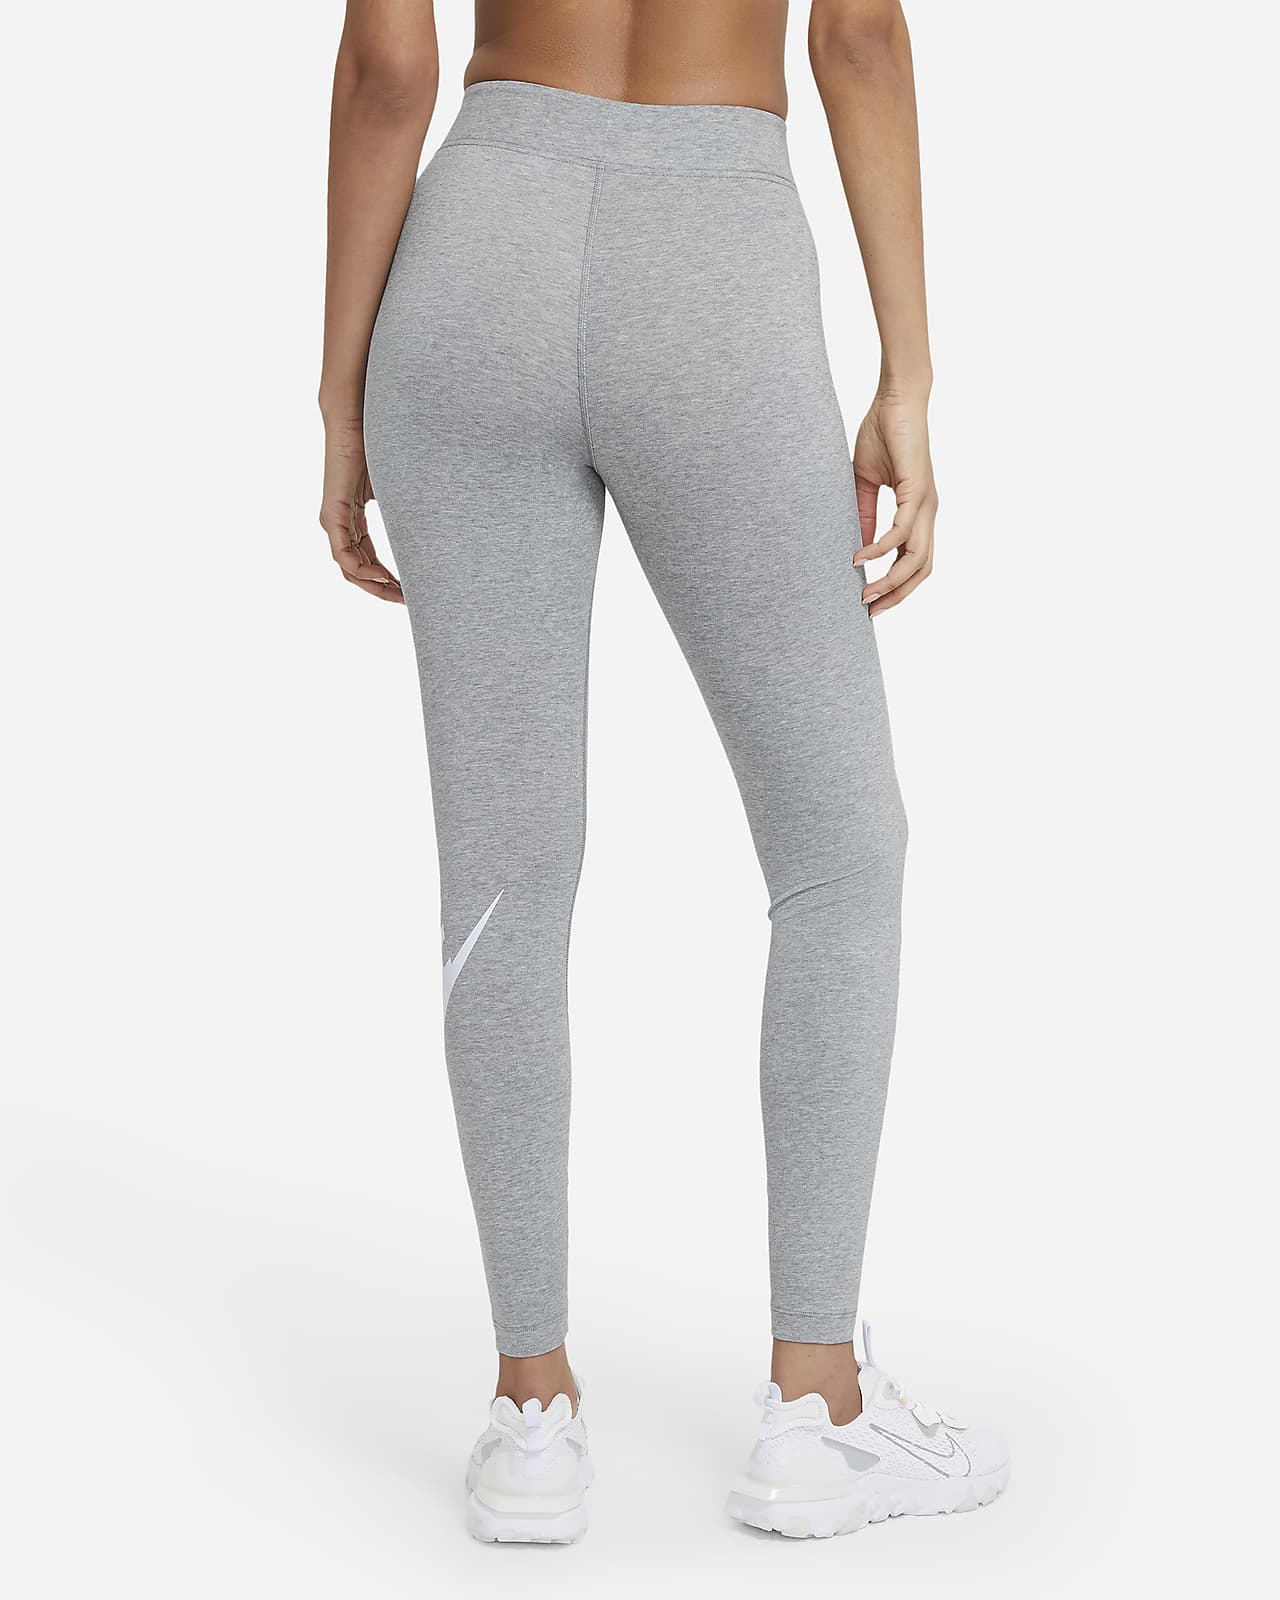 Nike, Tr Tch Pck Tght női leggings, Nők, root